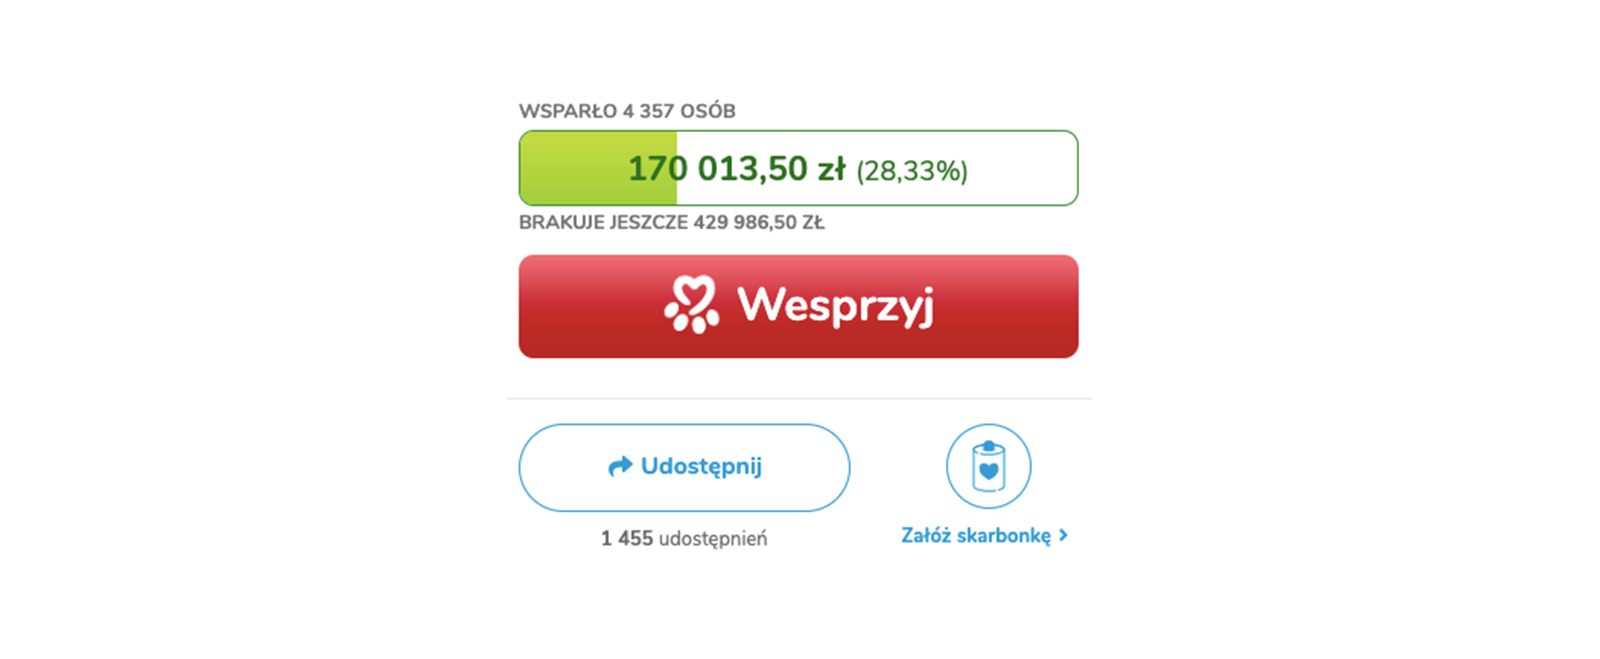 Jak pomagają Darczyńcy portalu Ratujemy Zwierzaki.pl?